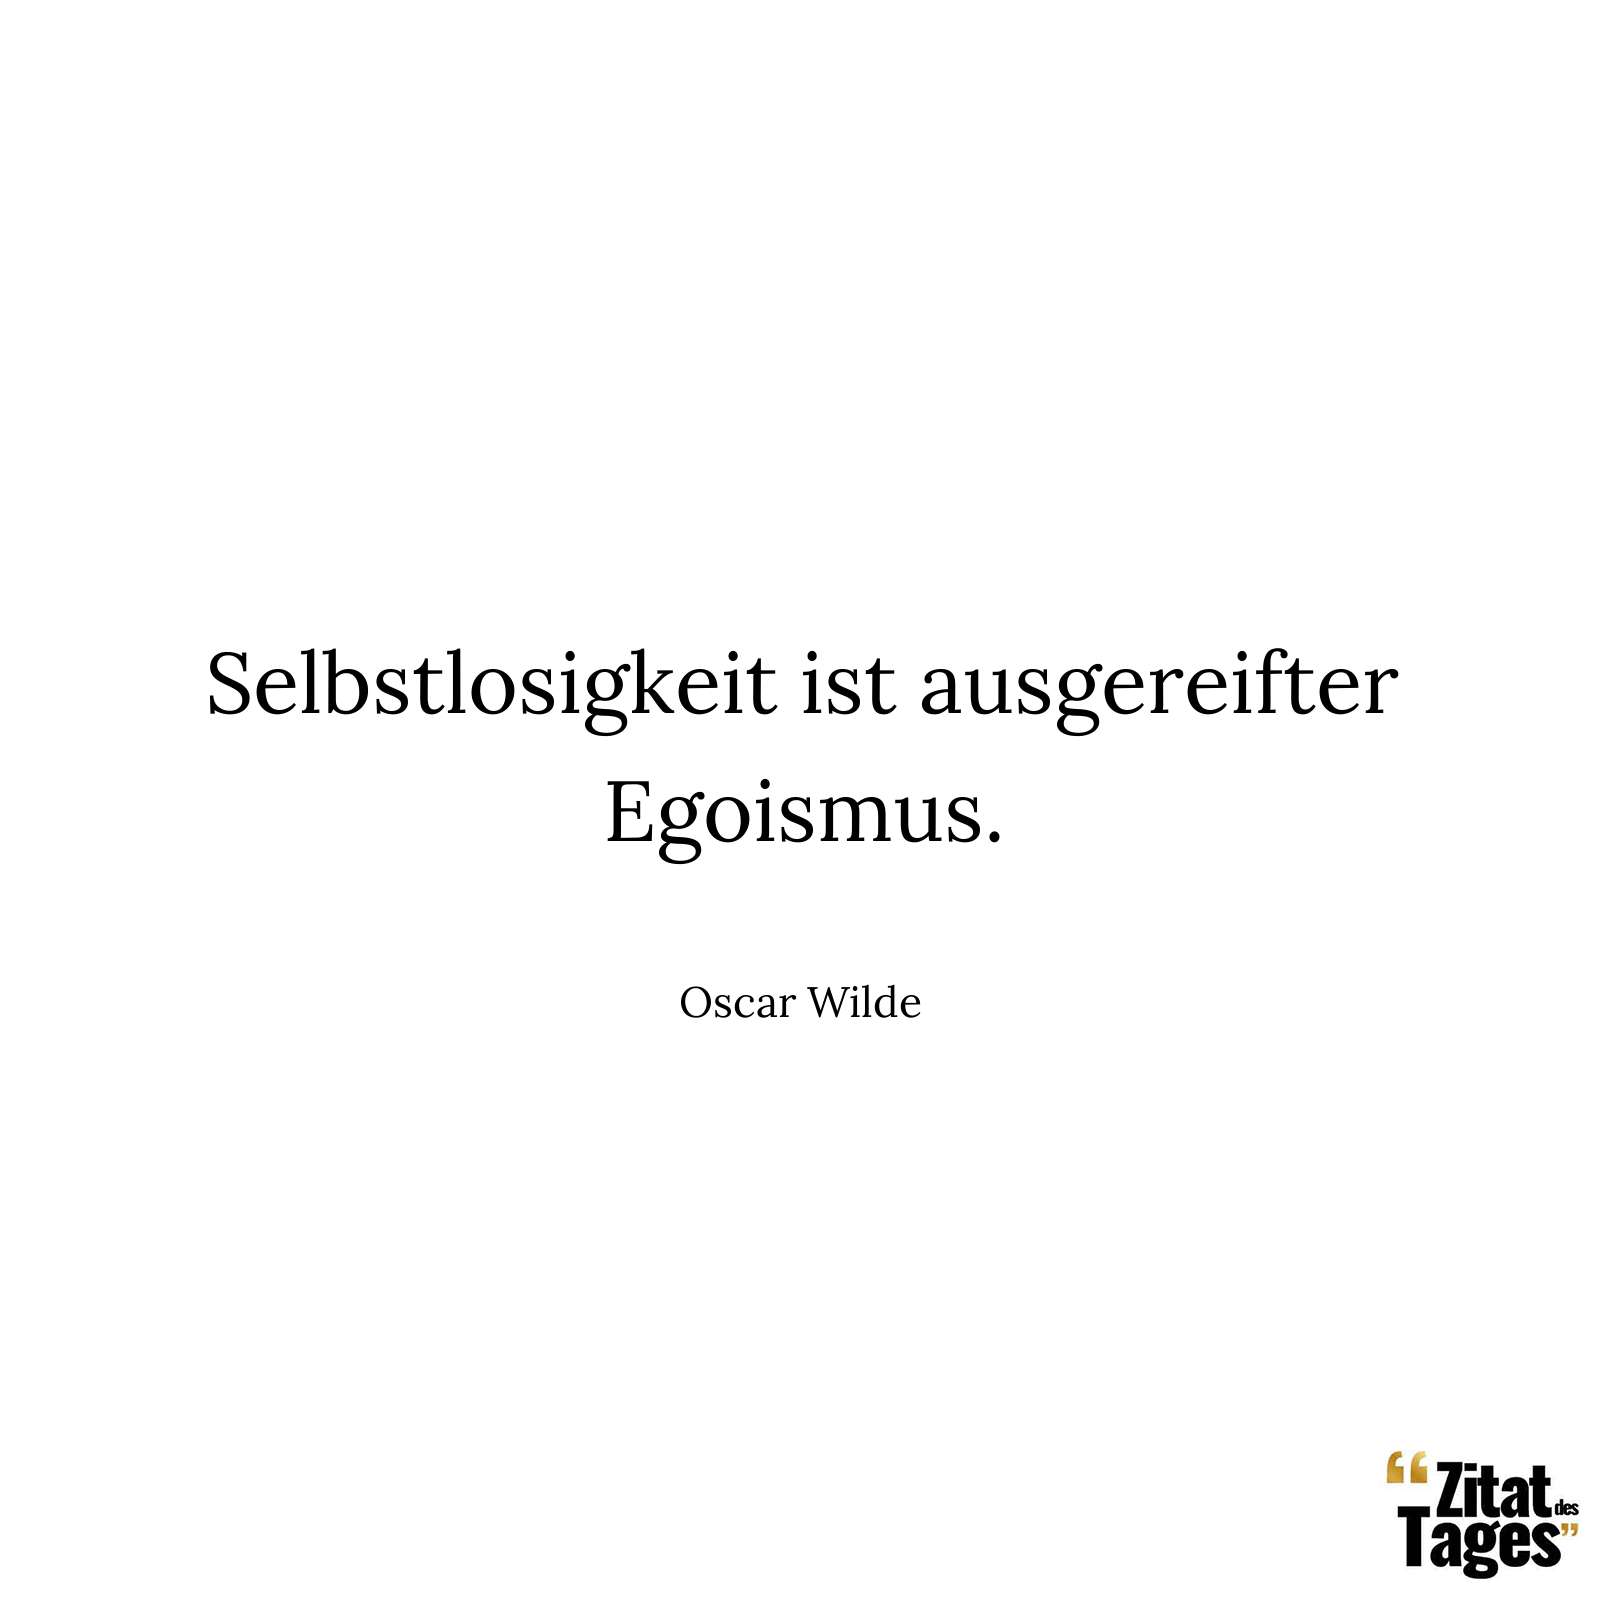 Selbstlosigkeit ist ausgereifter Egoismus. - Oscar Wilde